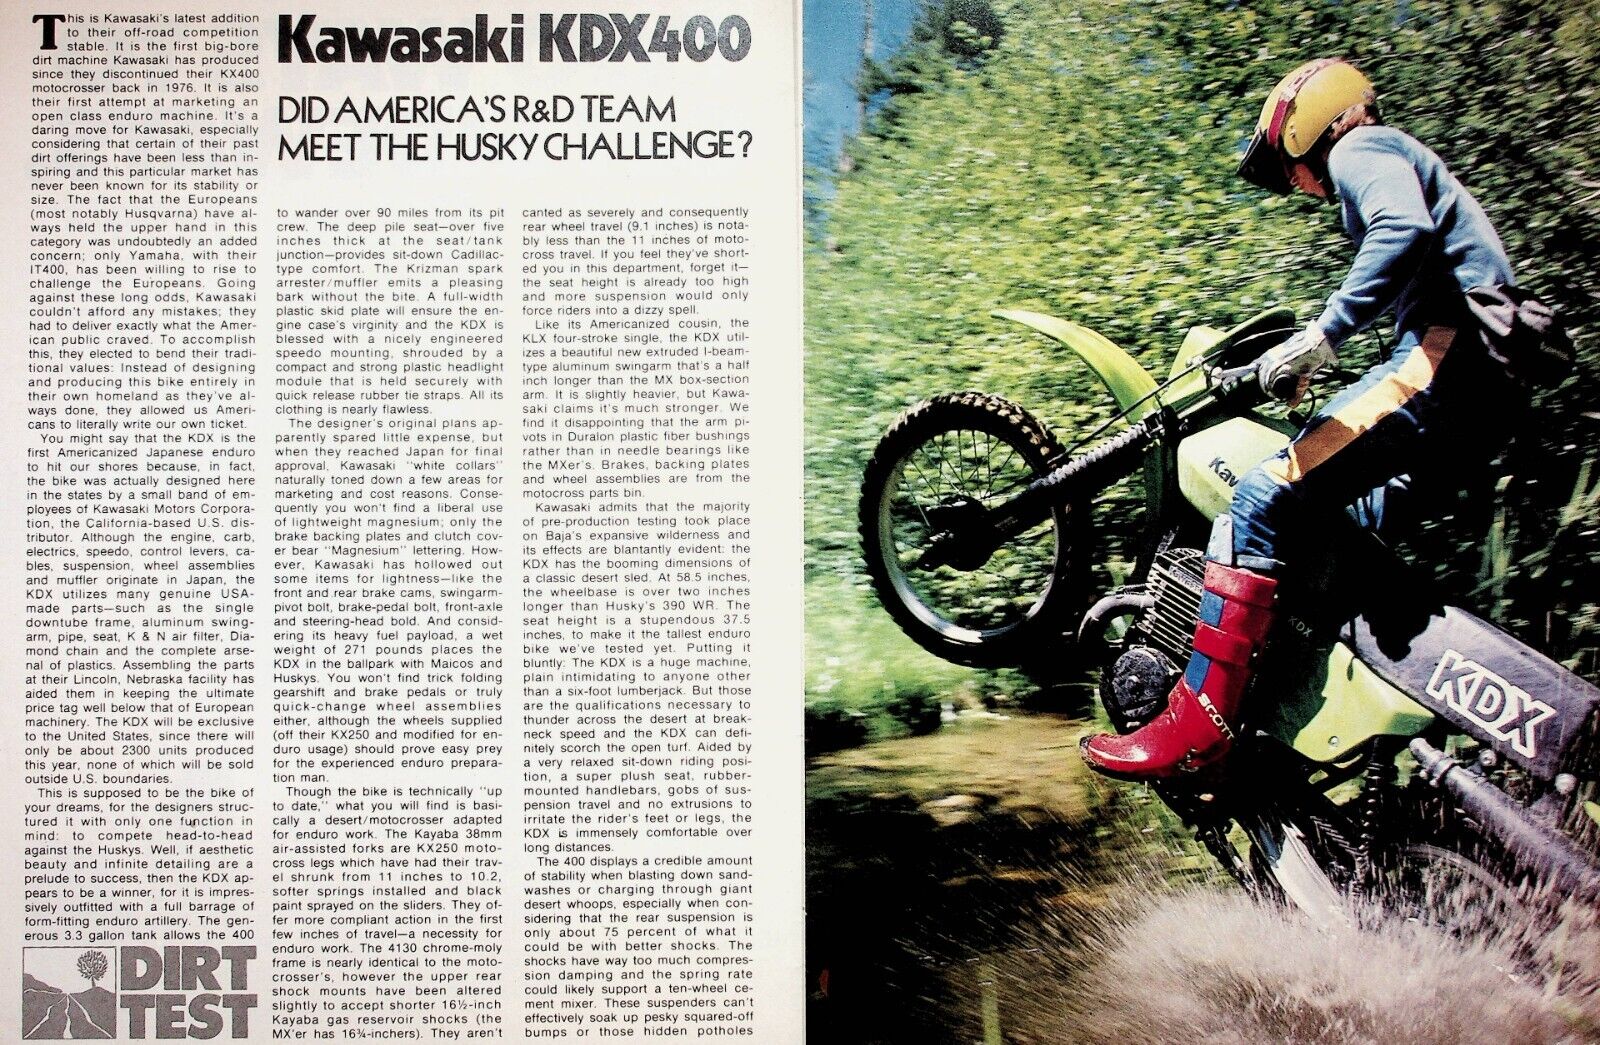 1979 Kawasaki KDX 400 Motorcycle Dirt Road Test - 6-Page Vintage Article